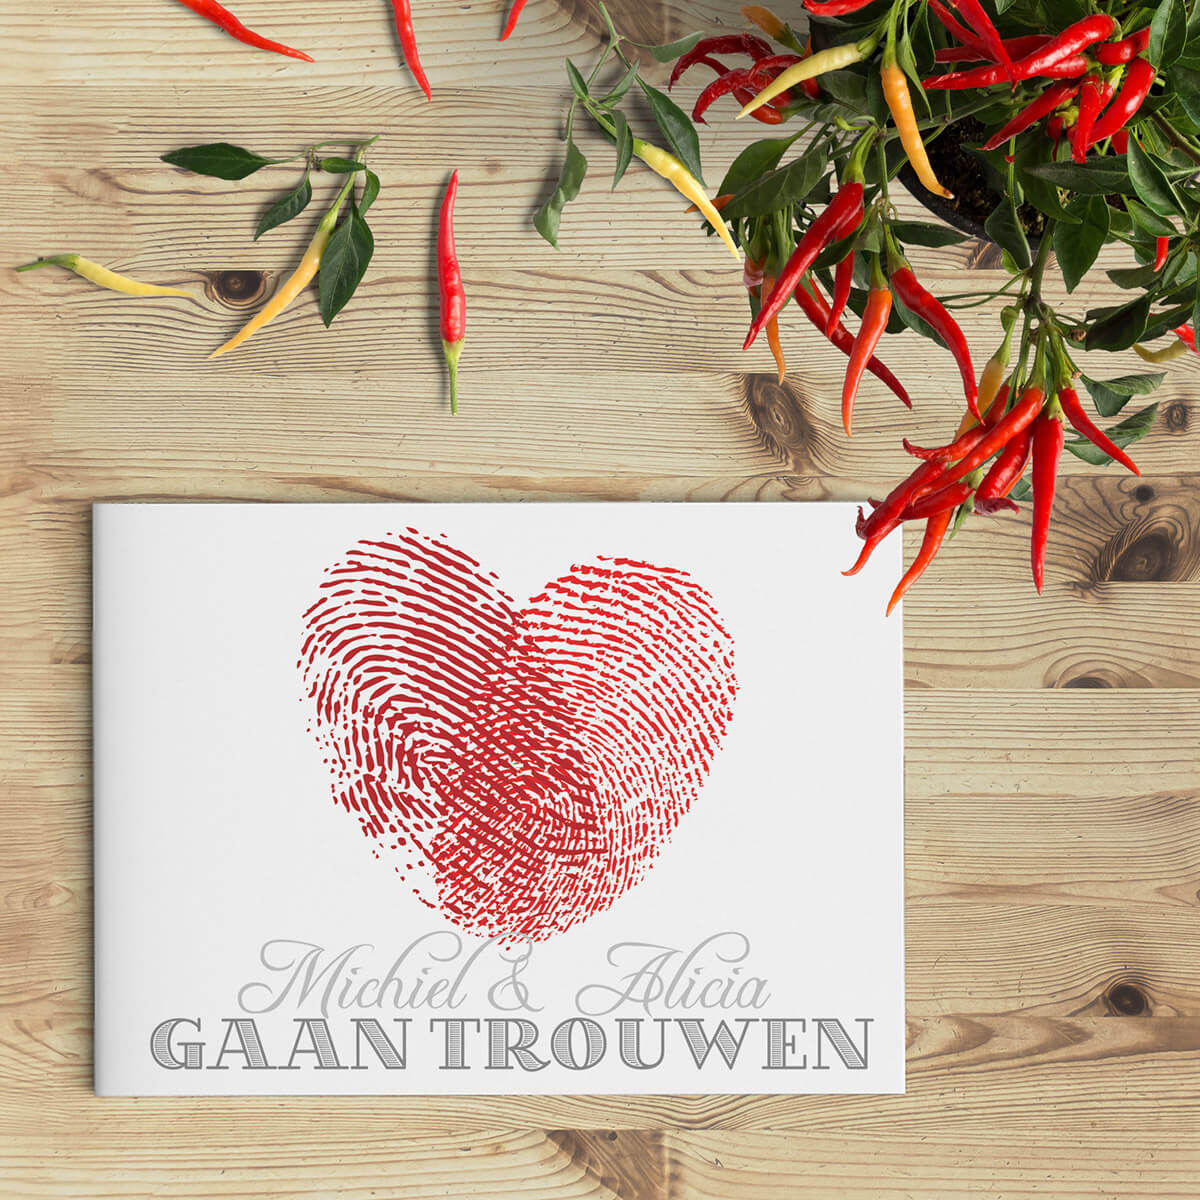 Modern trouwkaartje met hart gevormd door twee vingerafdrukken. Rood en grijs van kleur.